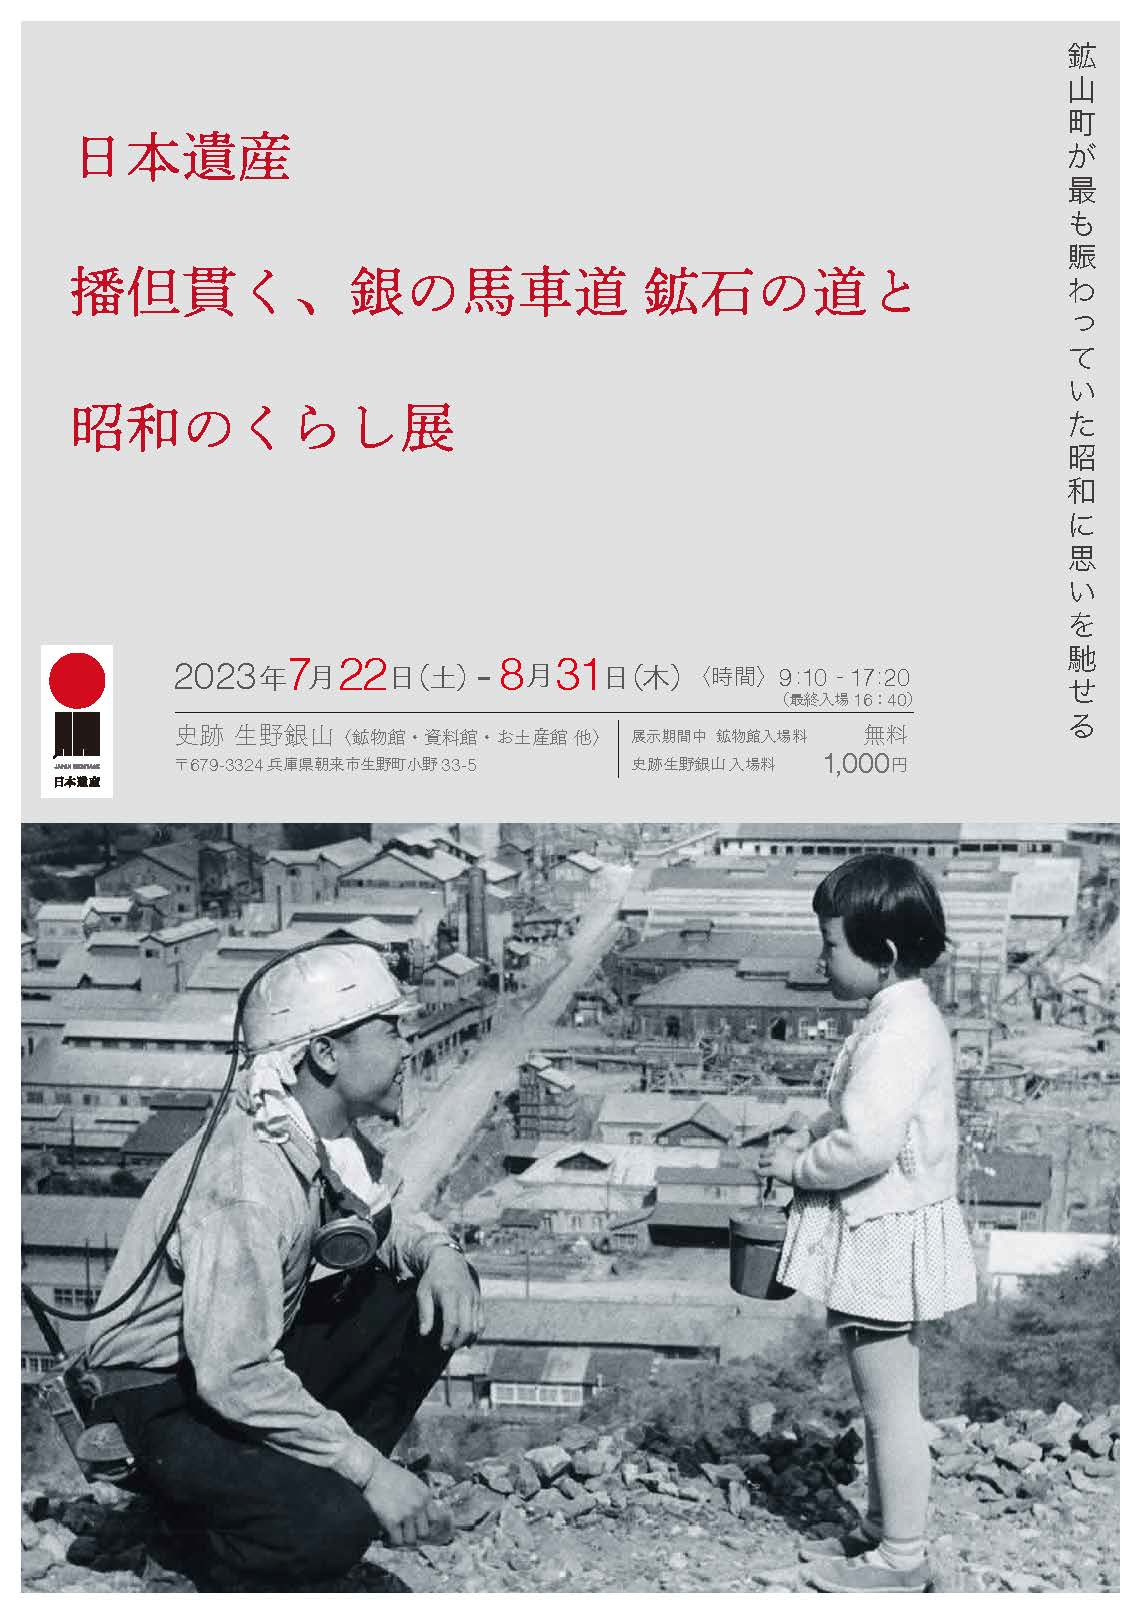 「日本遺産 播但貫く、銀の馬車道 鉱石の道と昭和のくらし展」 | あさご市ポータルサイトあさぶら